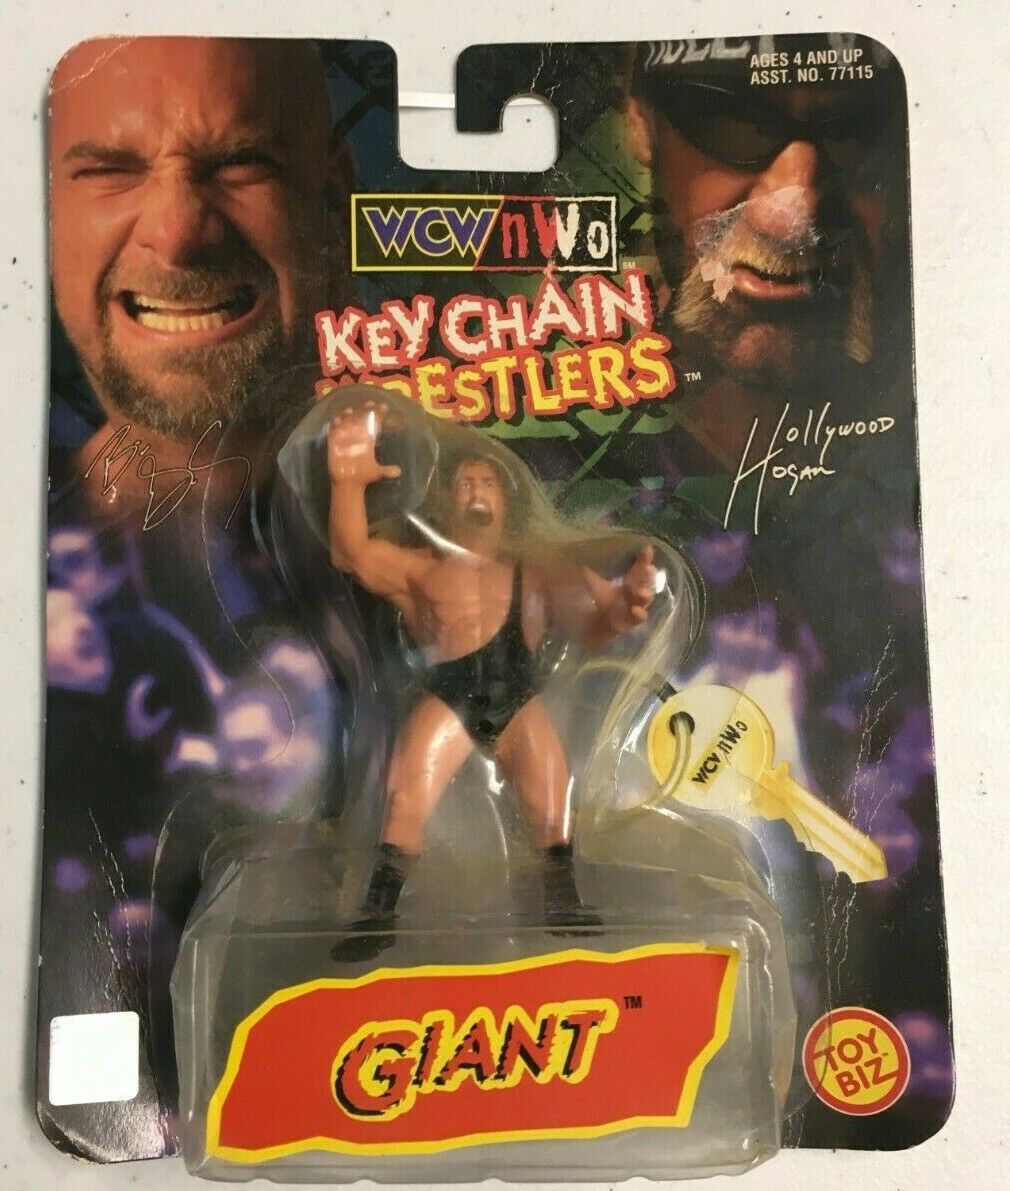 1998 Wcw Keychain Wrestlers - Giant